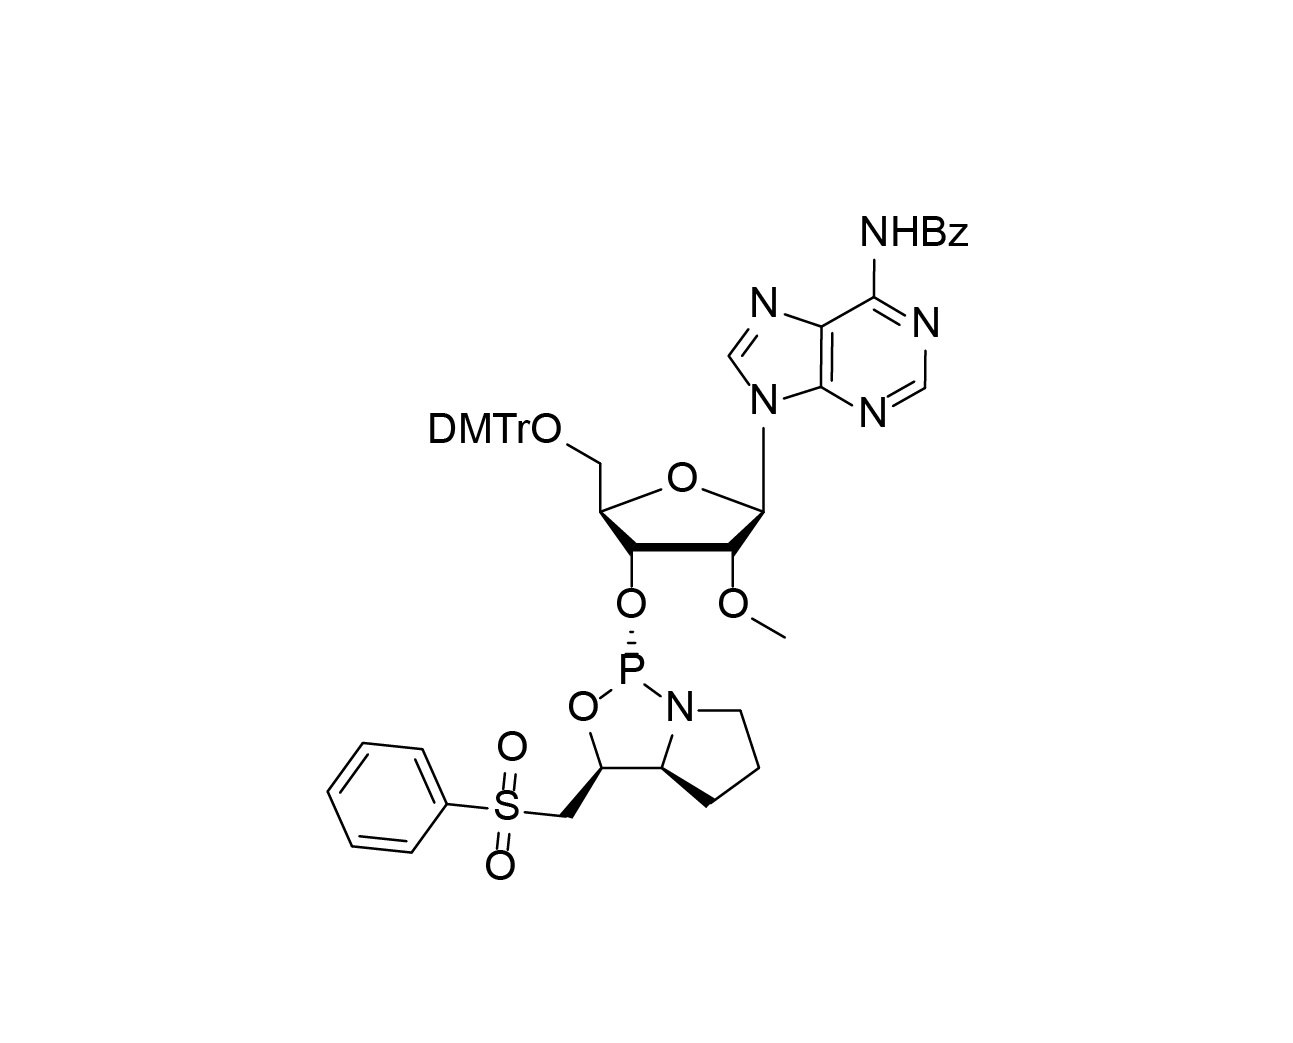 DMTr-2'-O-Me-rA(Bz)-3'-(L)-PSM-Phosphoramidite